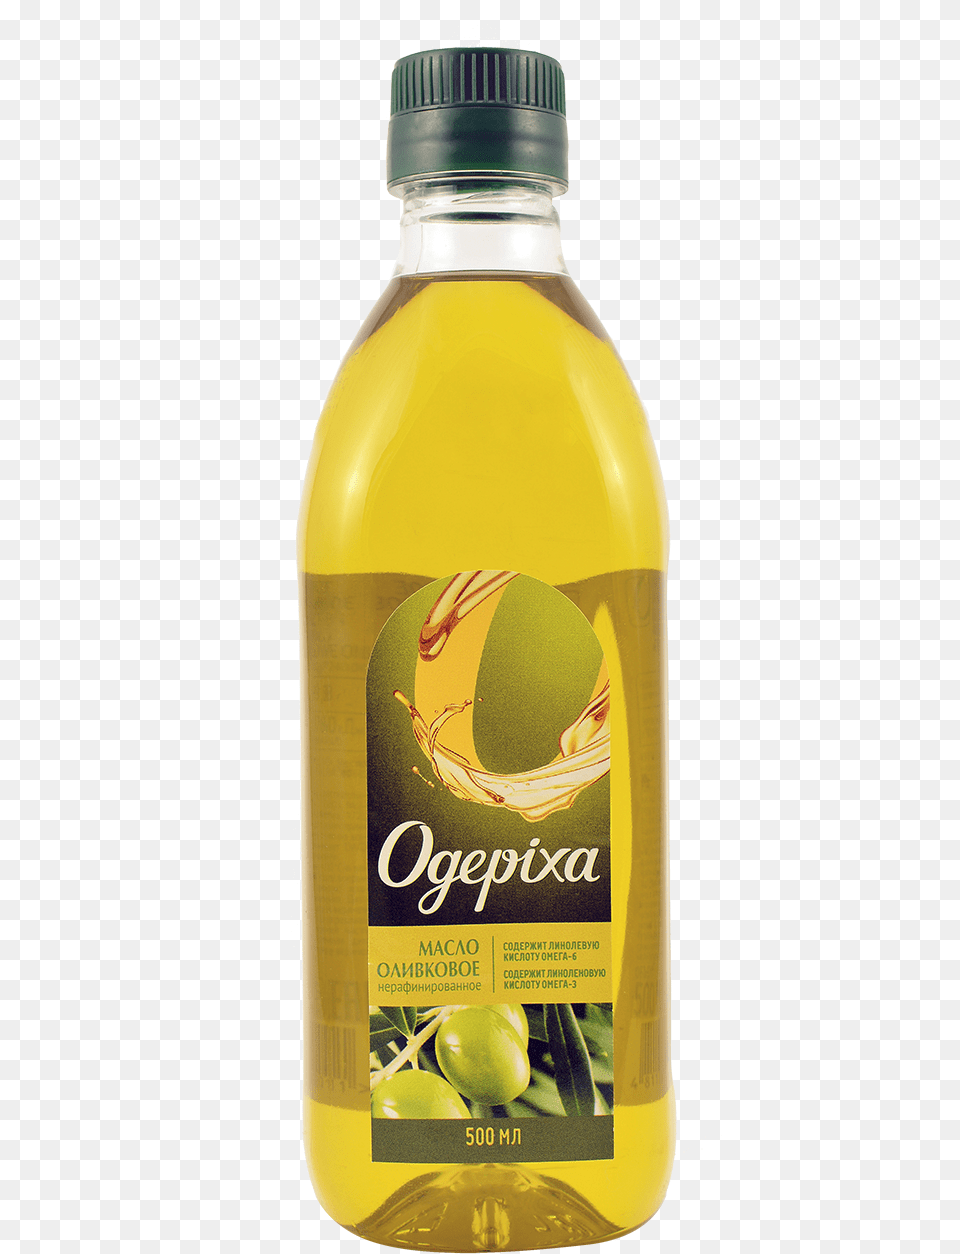 Olive Oil Olive Oil Bottle Transparent, Cooking Oil, Food, Alcohol, Beer Png Image